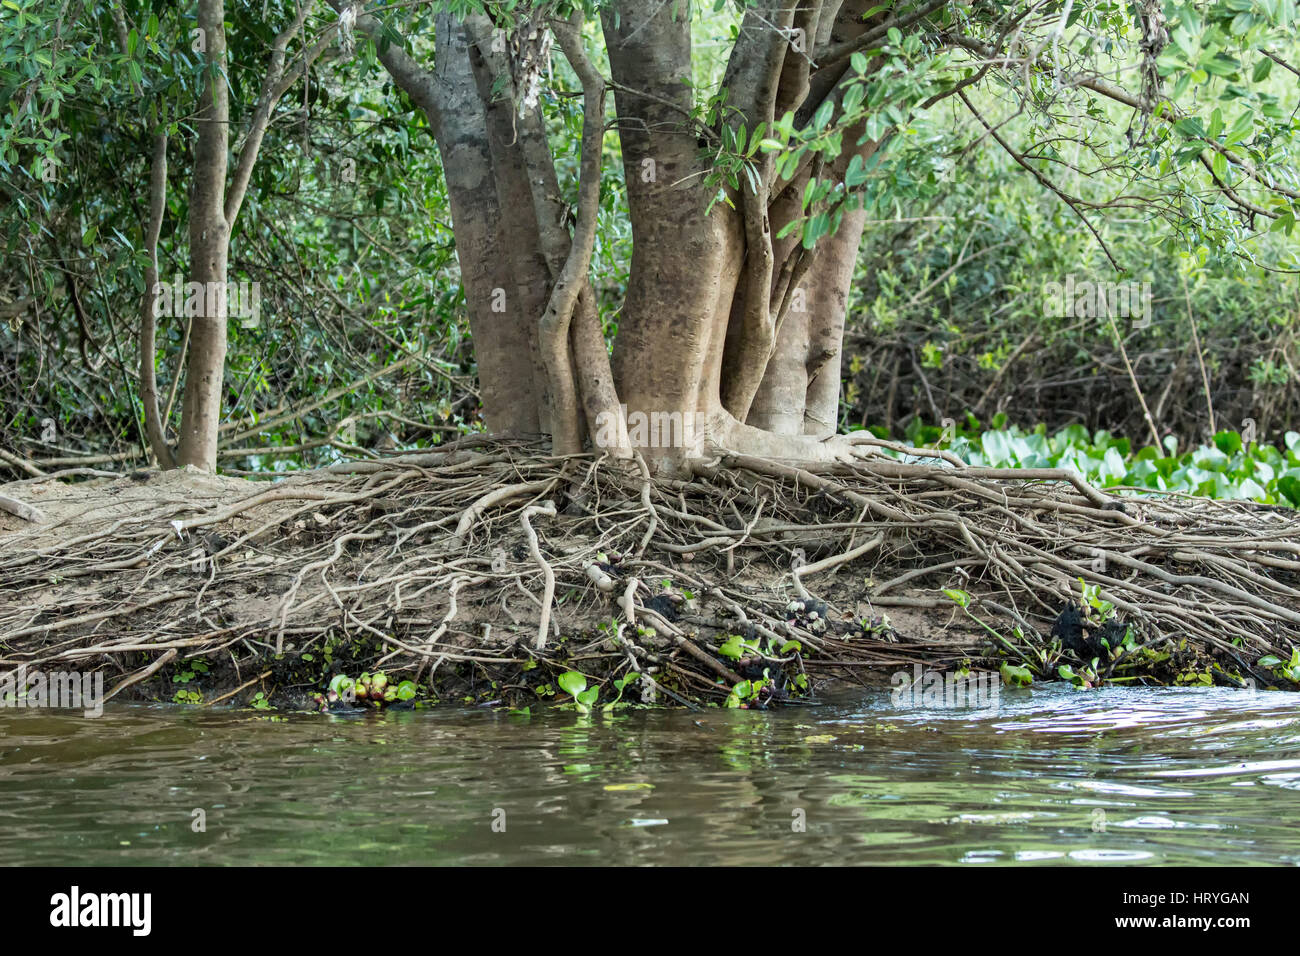 Arbre dans la forêt tropicale qui a un grand nombre de racines aériennes, qui poussent sur une berge dans la région du Pantanal de Mato Grosso, Brésil, Afrique du Sud Banque D'Images